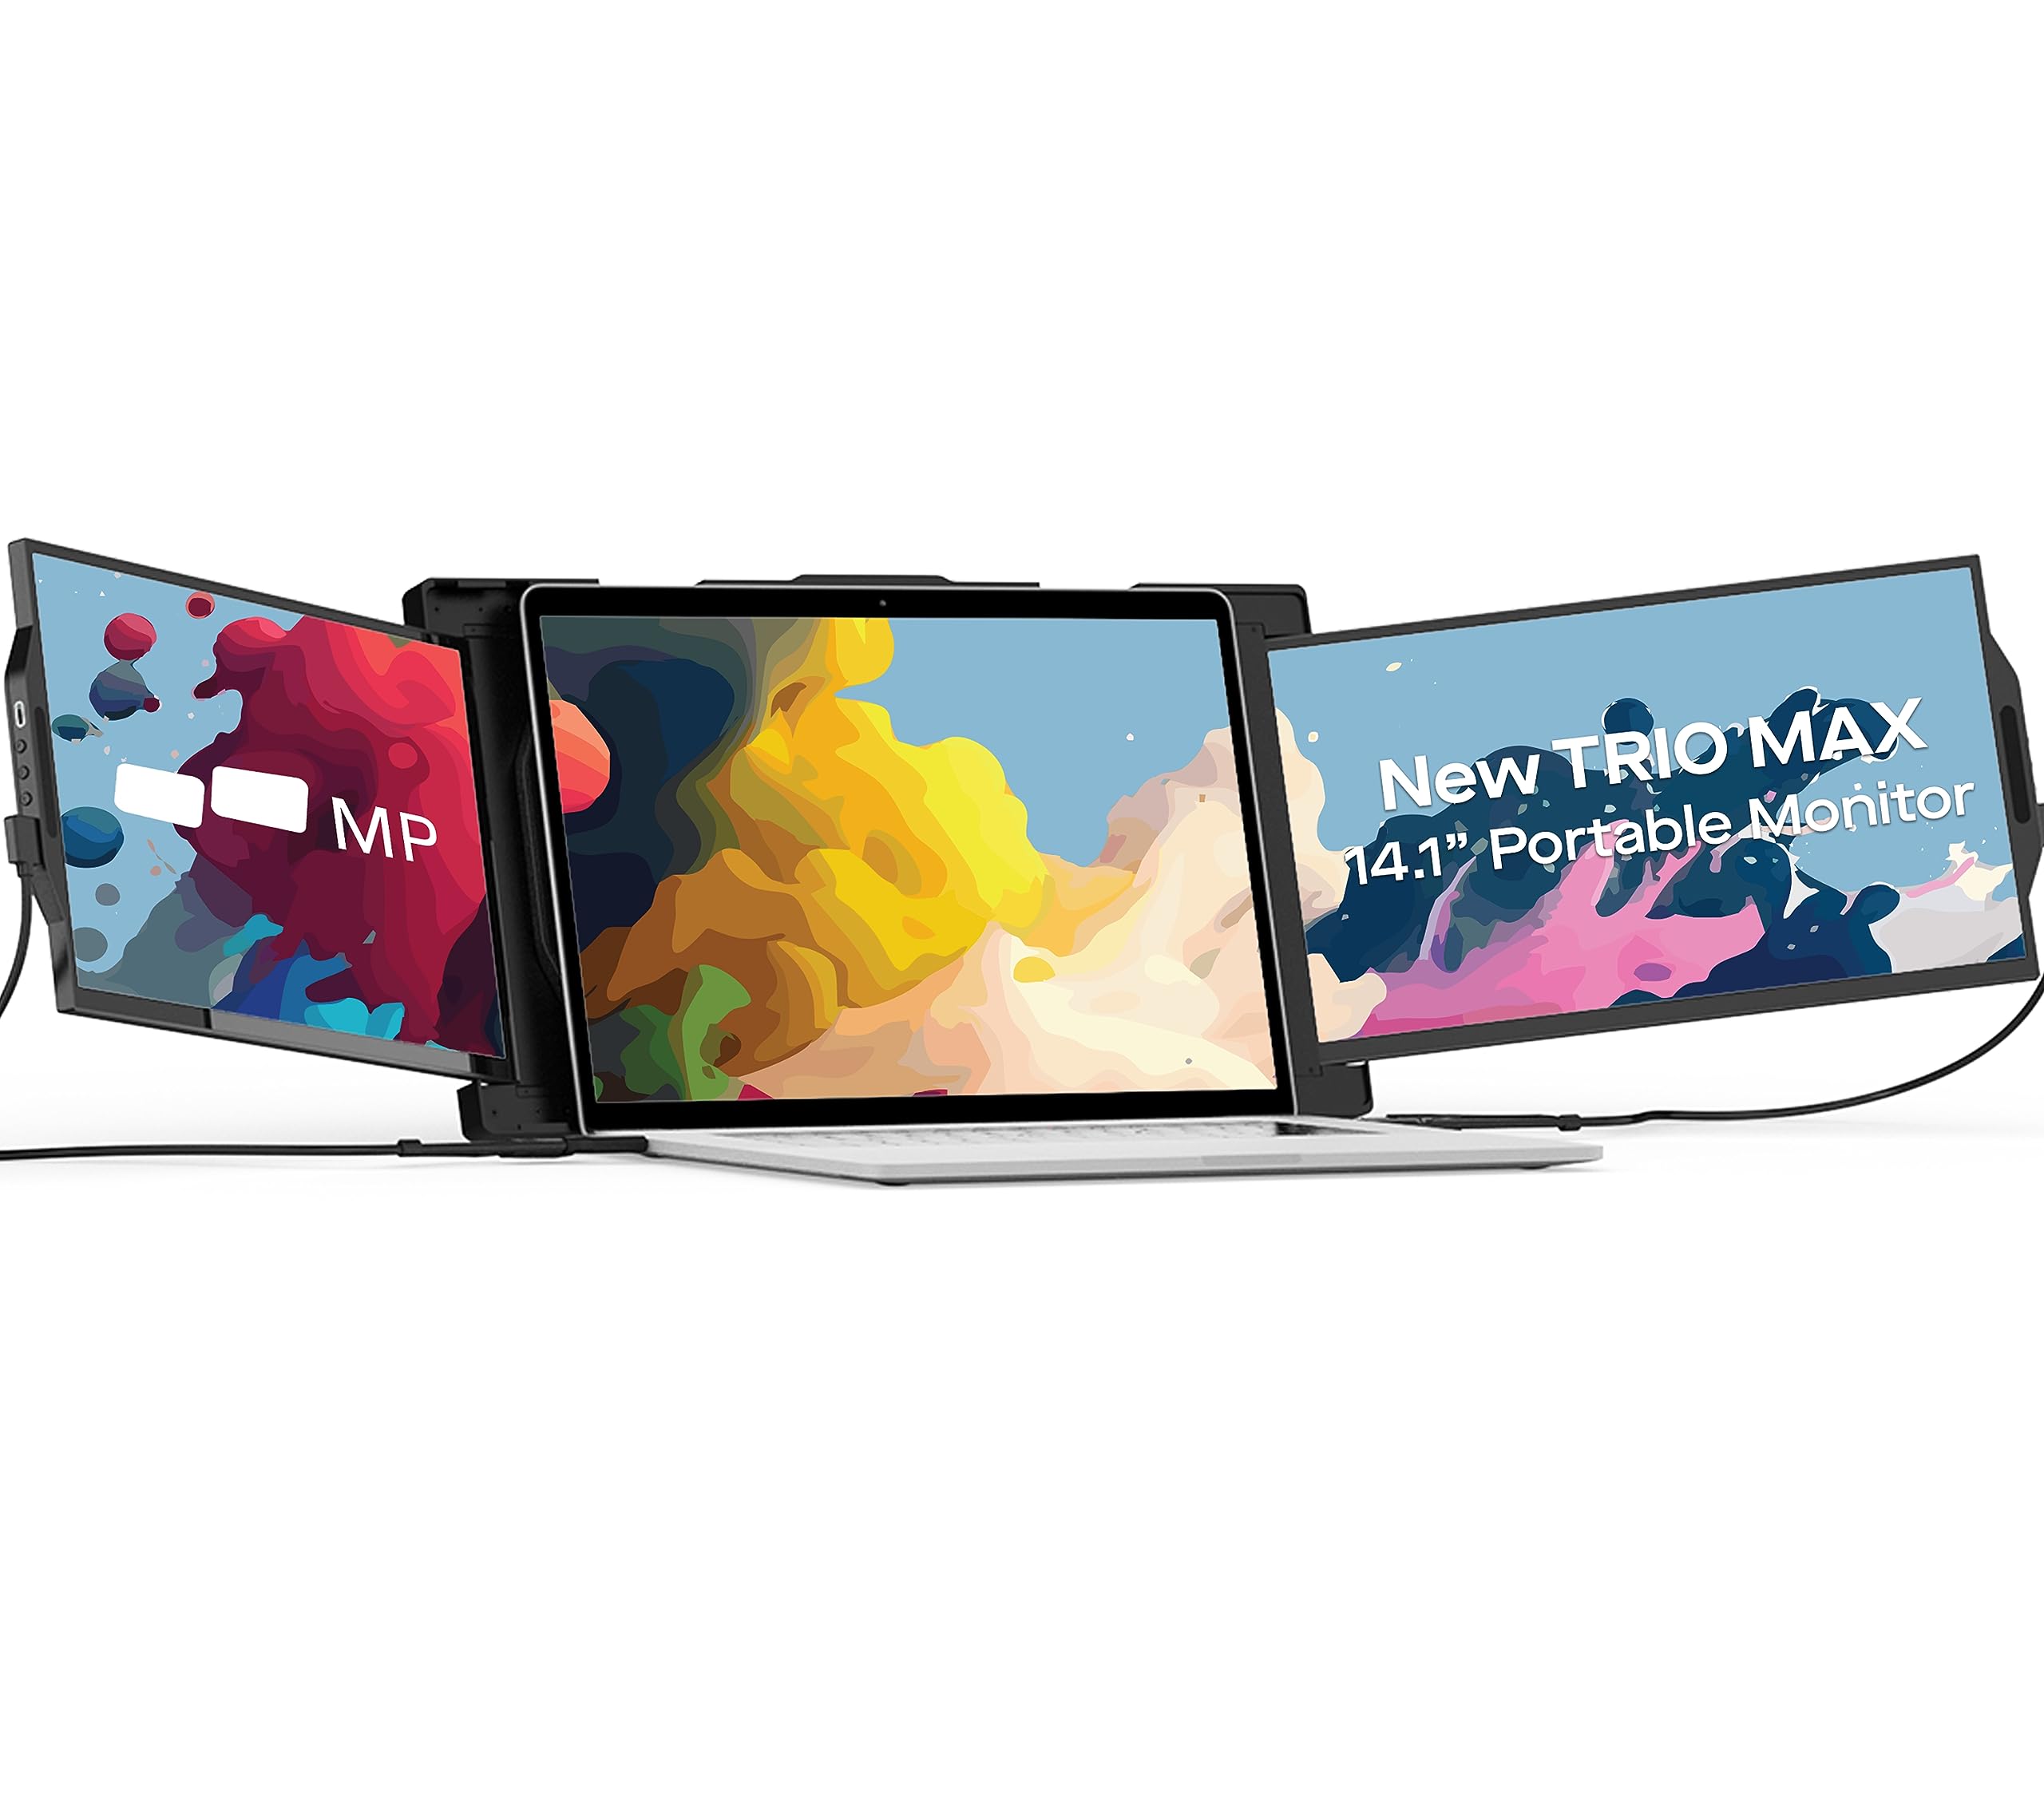 New Mobile Pixels Trio Max Portable Monitor, 14.1